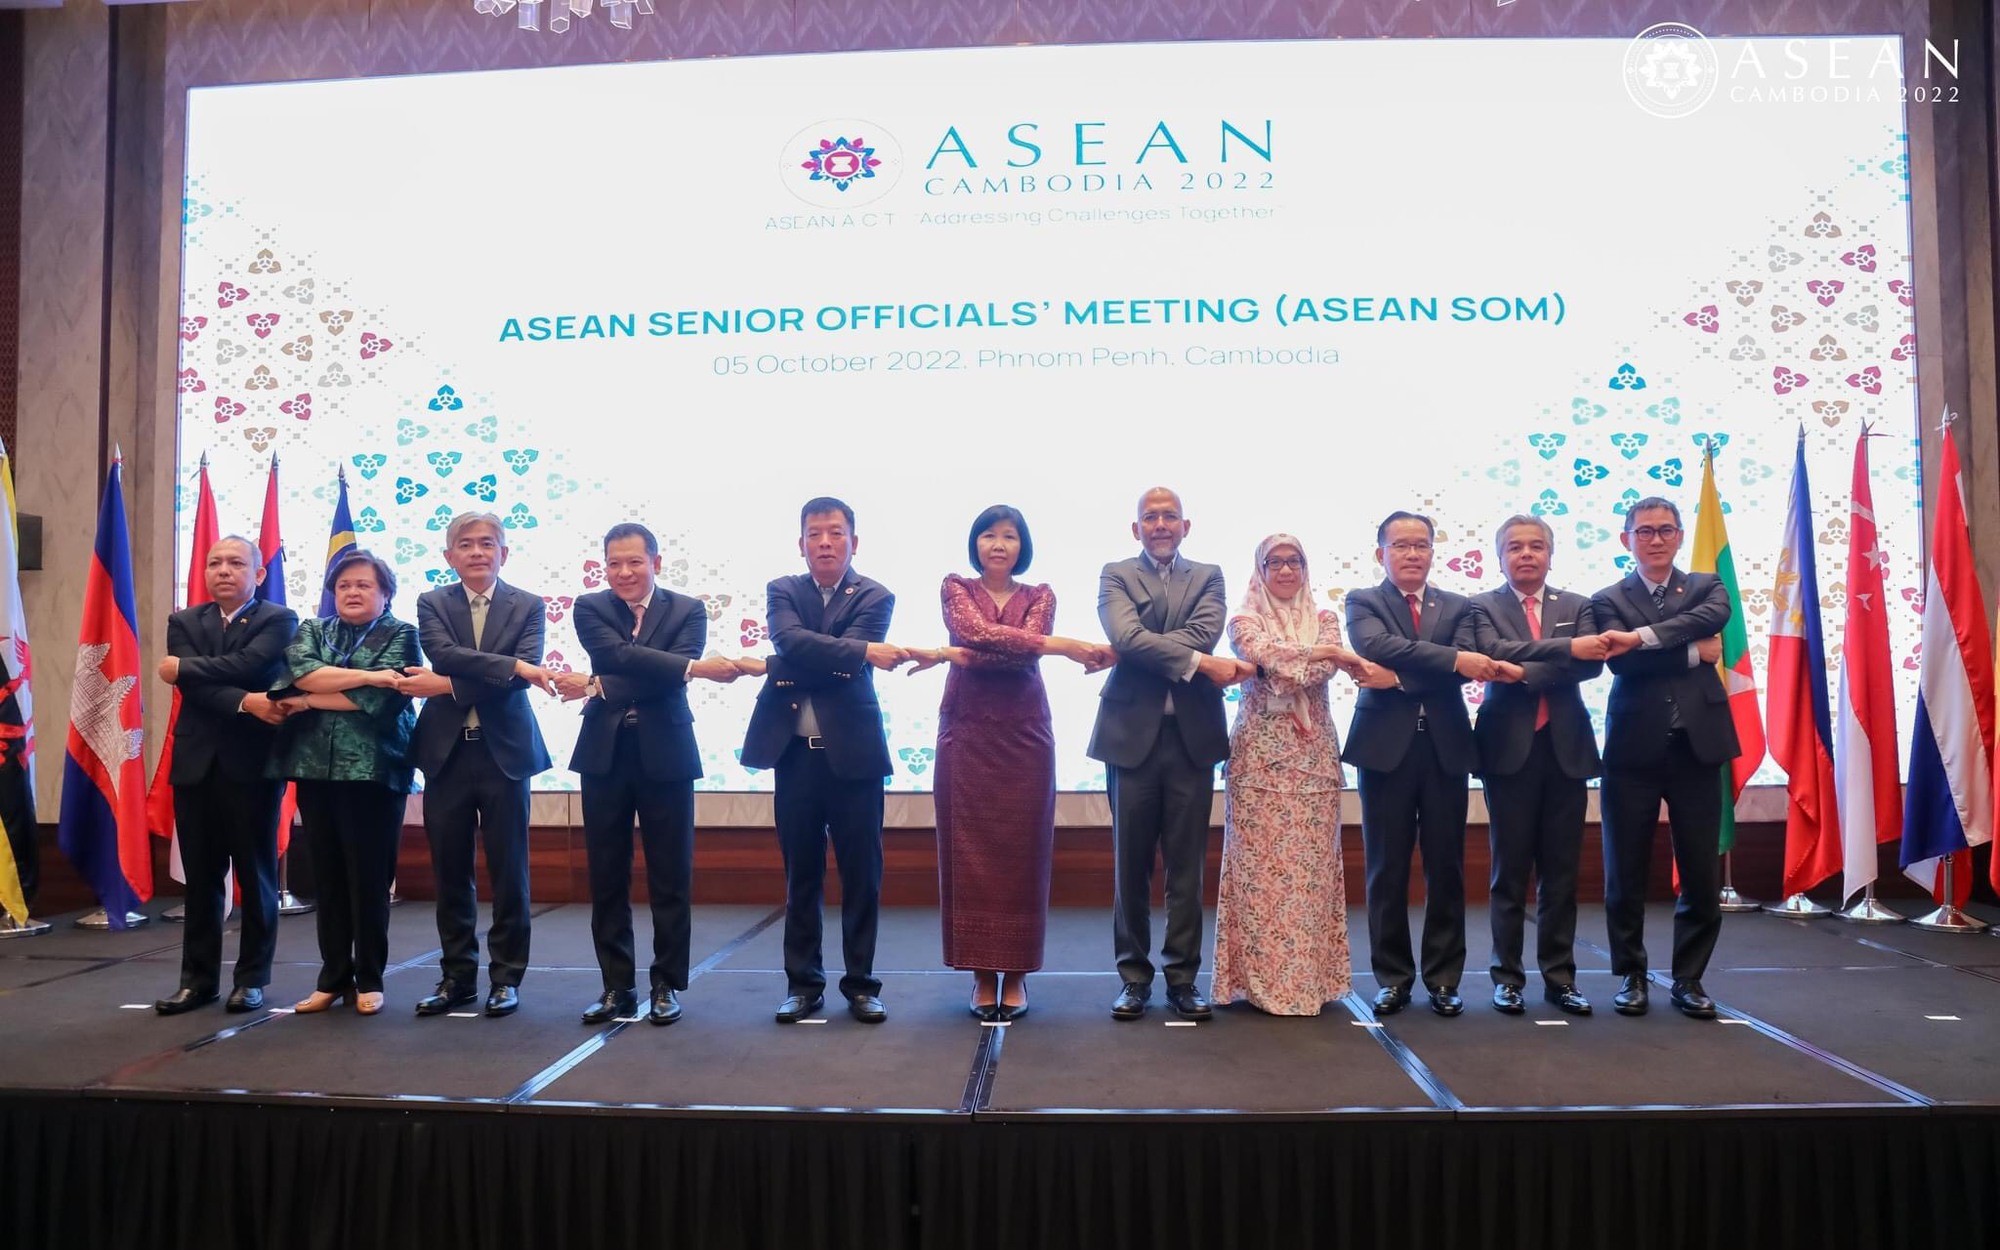 Thủ tướng Phạm Minh Chính cũng sẽ tham dự hội nghị cấp cao ASEAN và ASEAN với các đối tác diễn ra tại Phnom Penh từ 10-13/11.